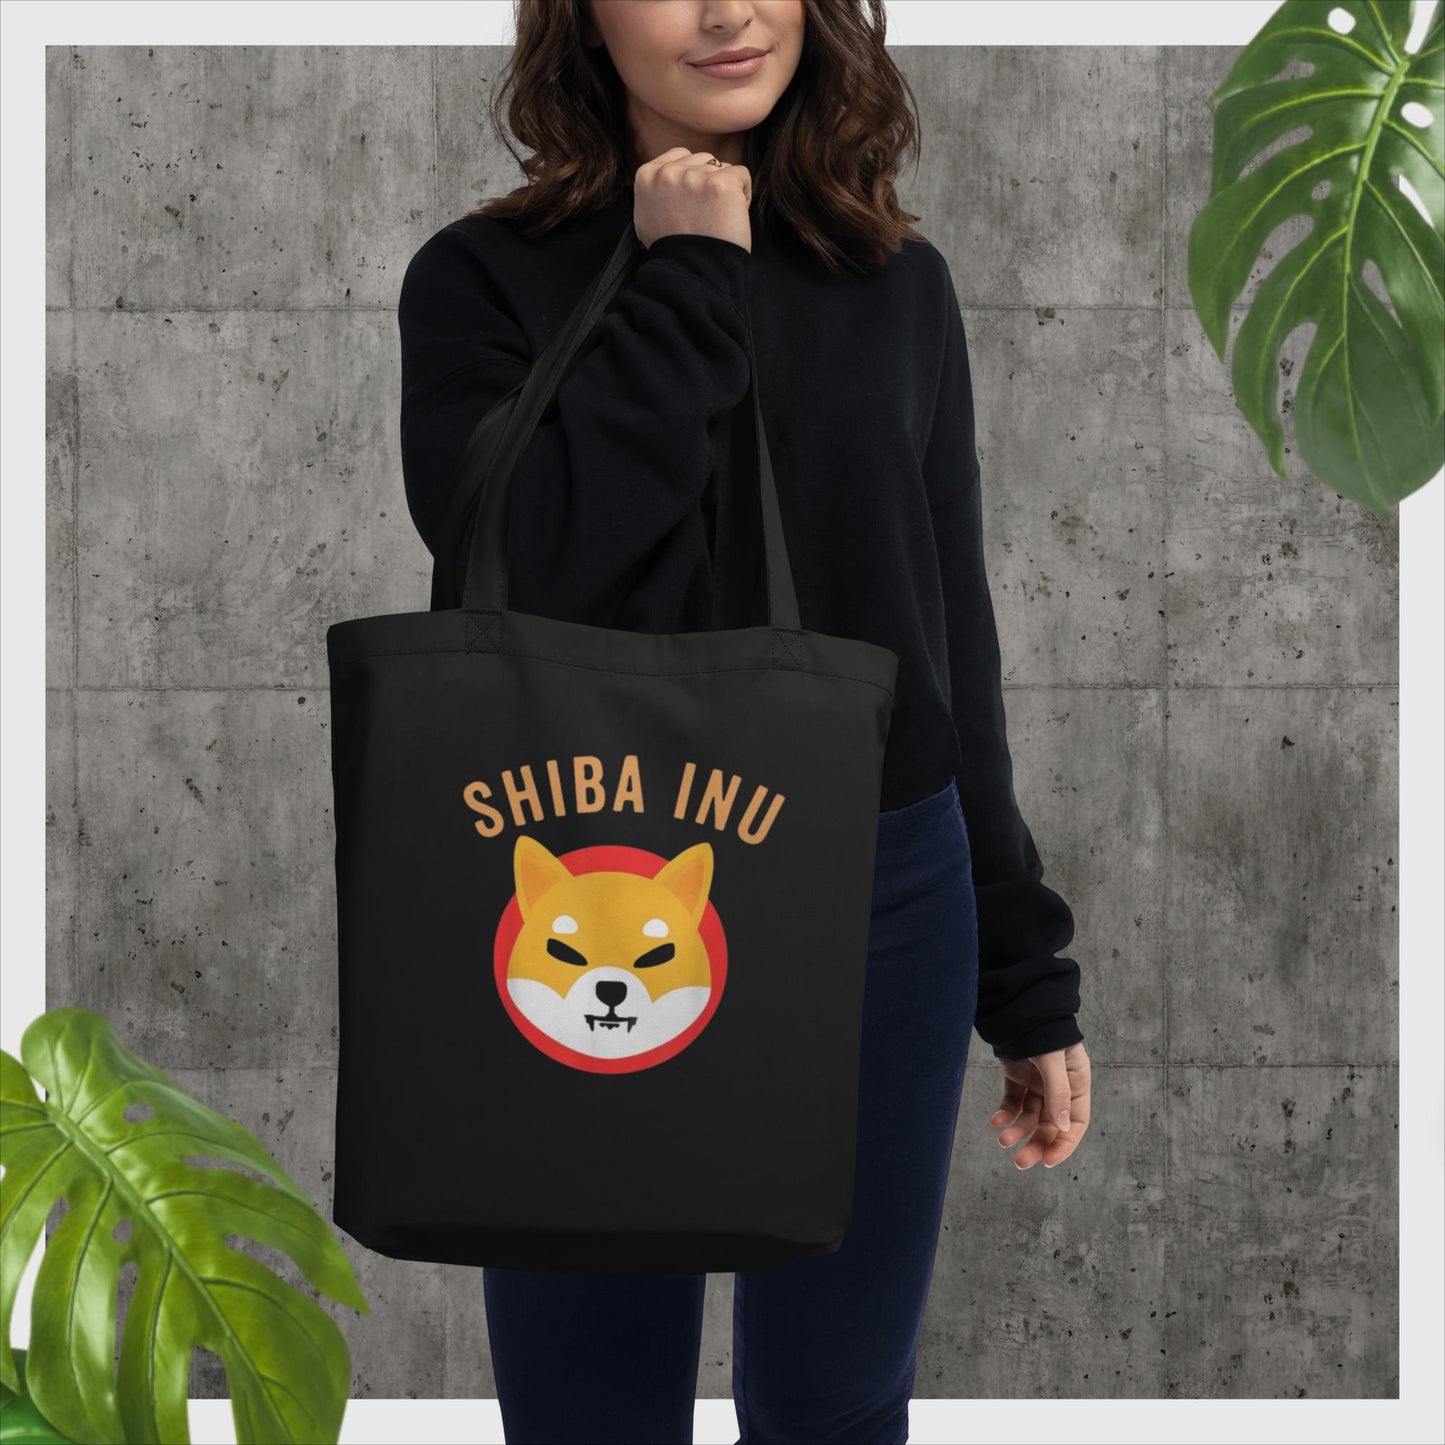 Shiba Tokyo - Eco Bio Bag